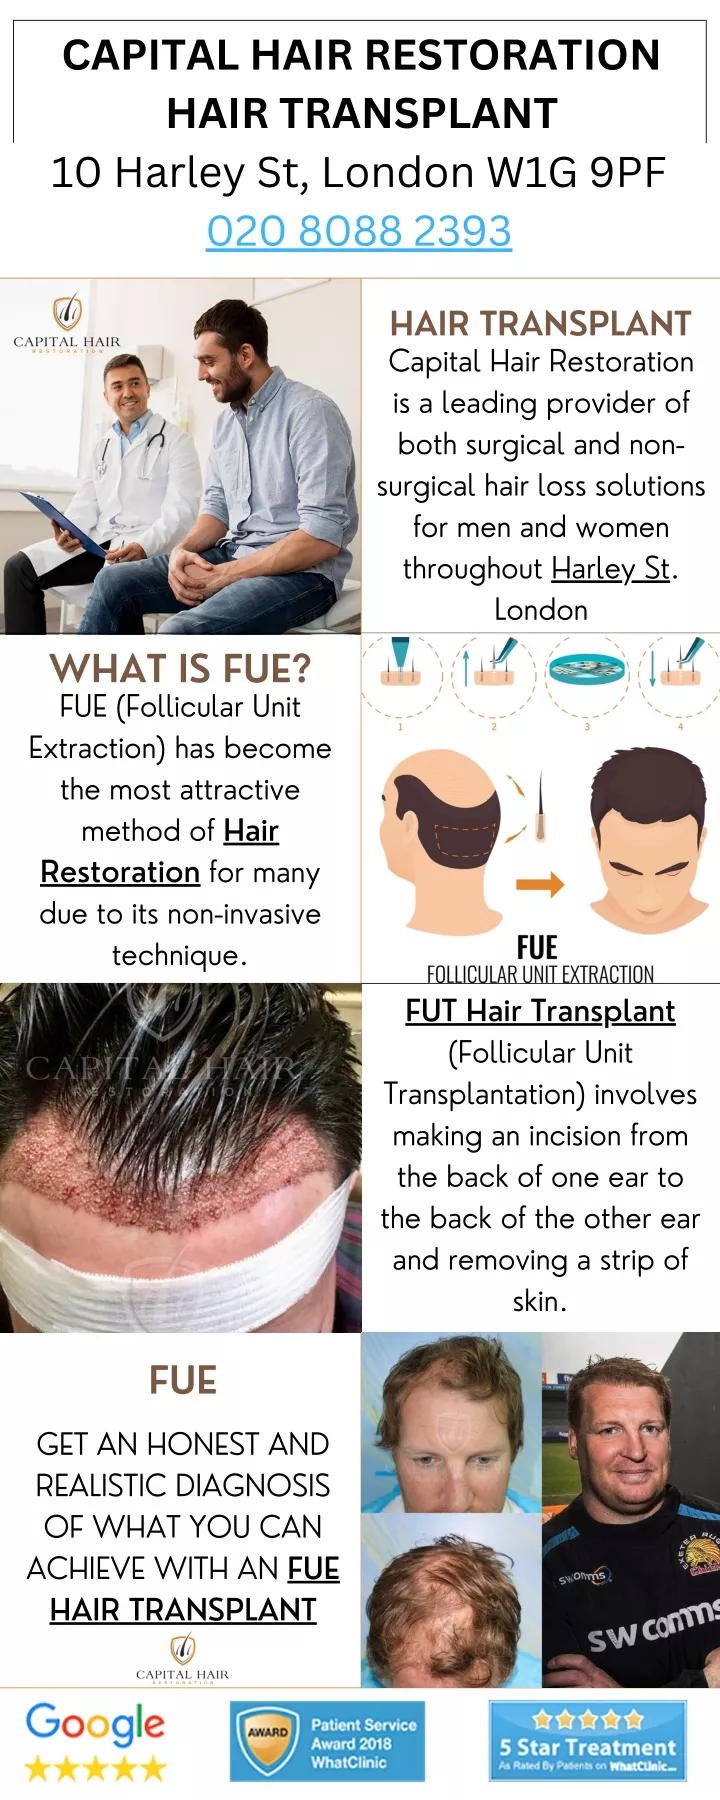 capital hair restoration hair transplant 020 8088